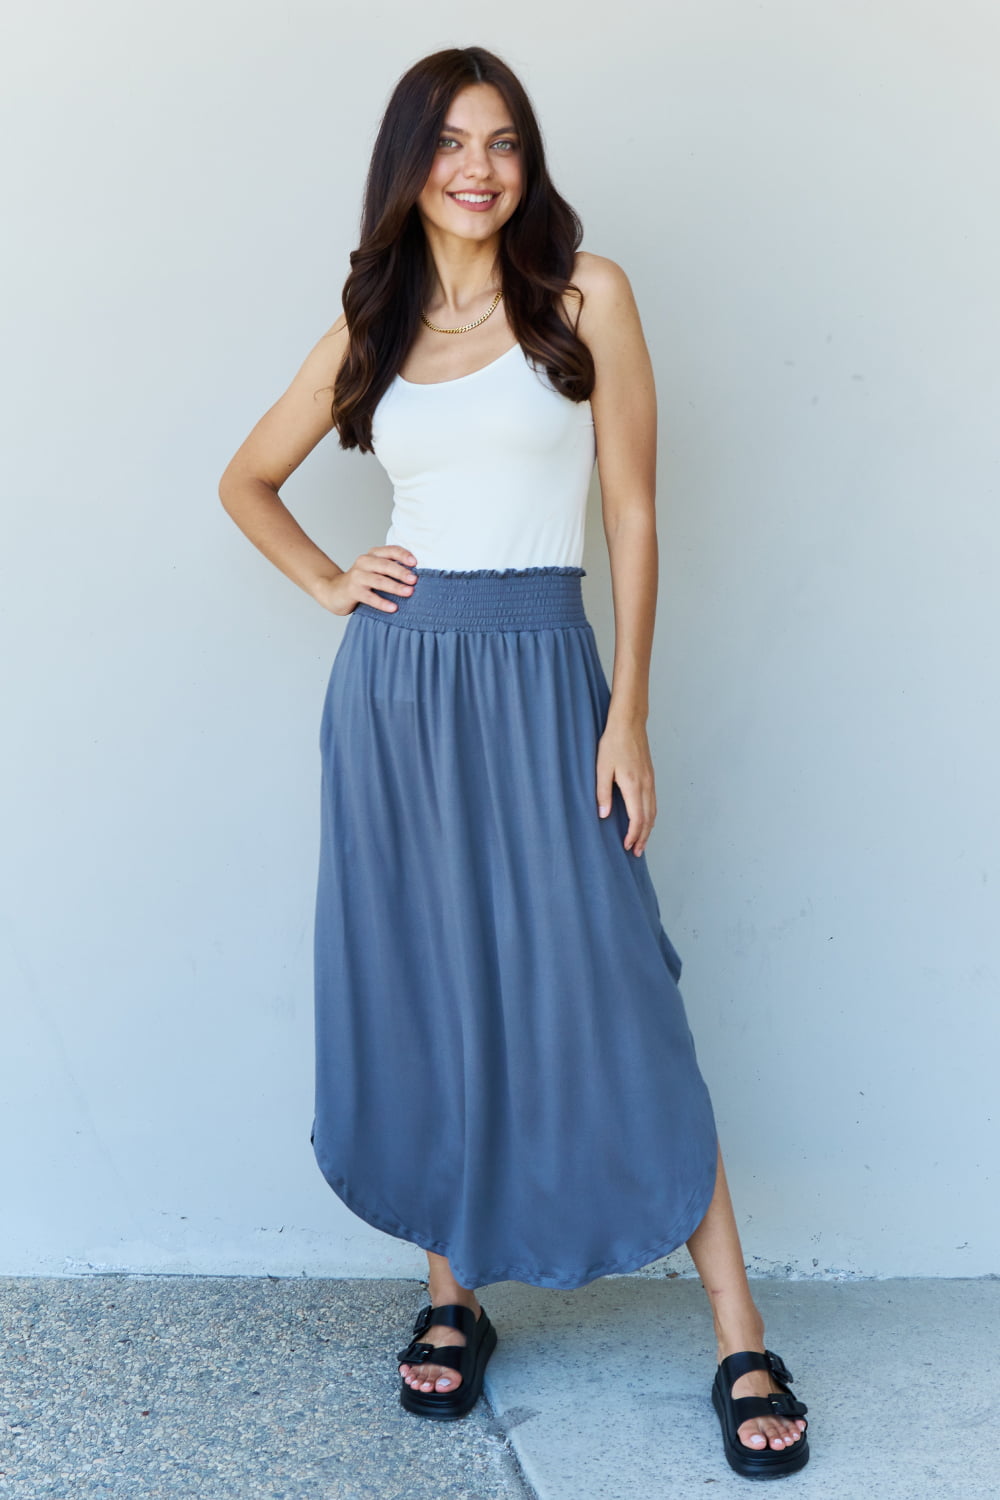 Doublju Comfort Princess Full Size High Waist Scoop Hem Maxi Skirt in Dusty Blue - Tigbul's Fashion